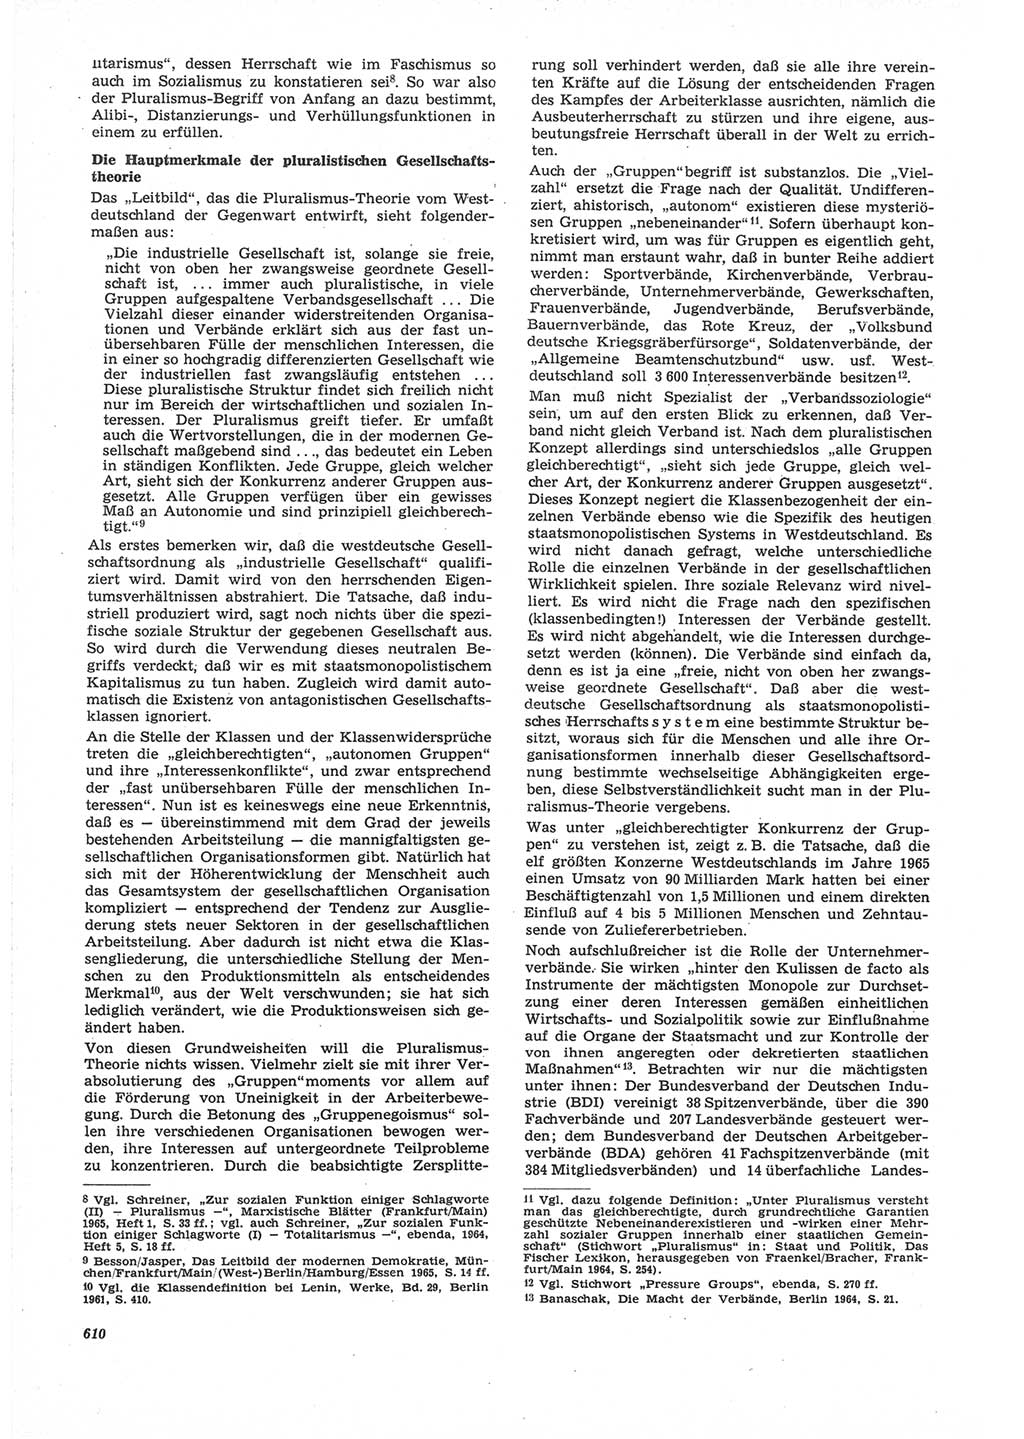 Neue Justiz (NJ), Zeitschrift für Recht und Rechtswissenschaft [Deutsche Demokratische Republik (DDR)], 22. Jahrgang 1968, Seite 610 (NJ DDR 1968, S. 610)